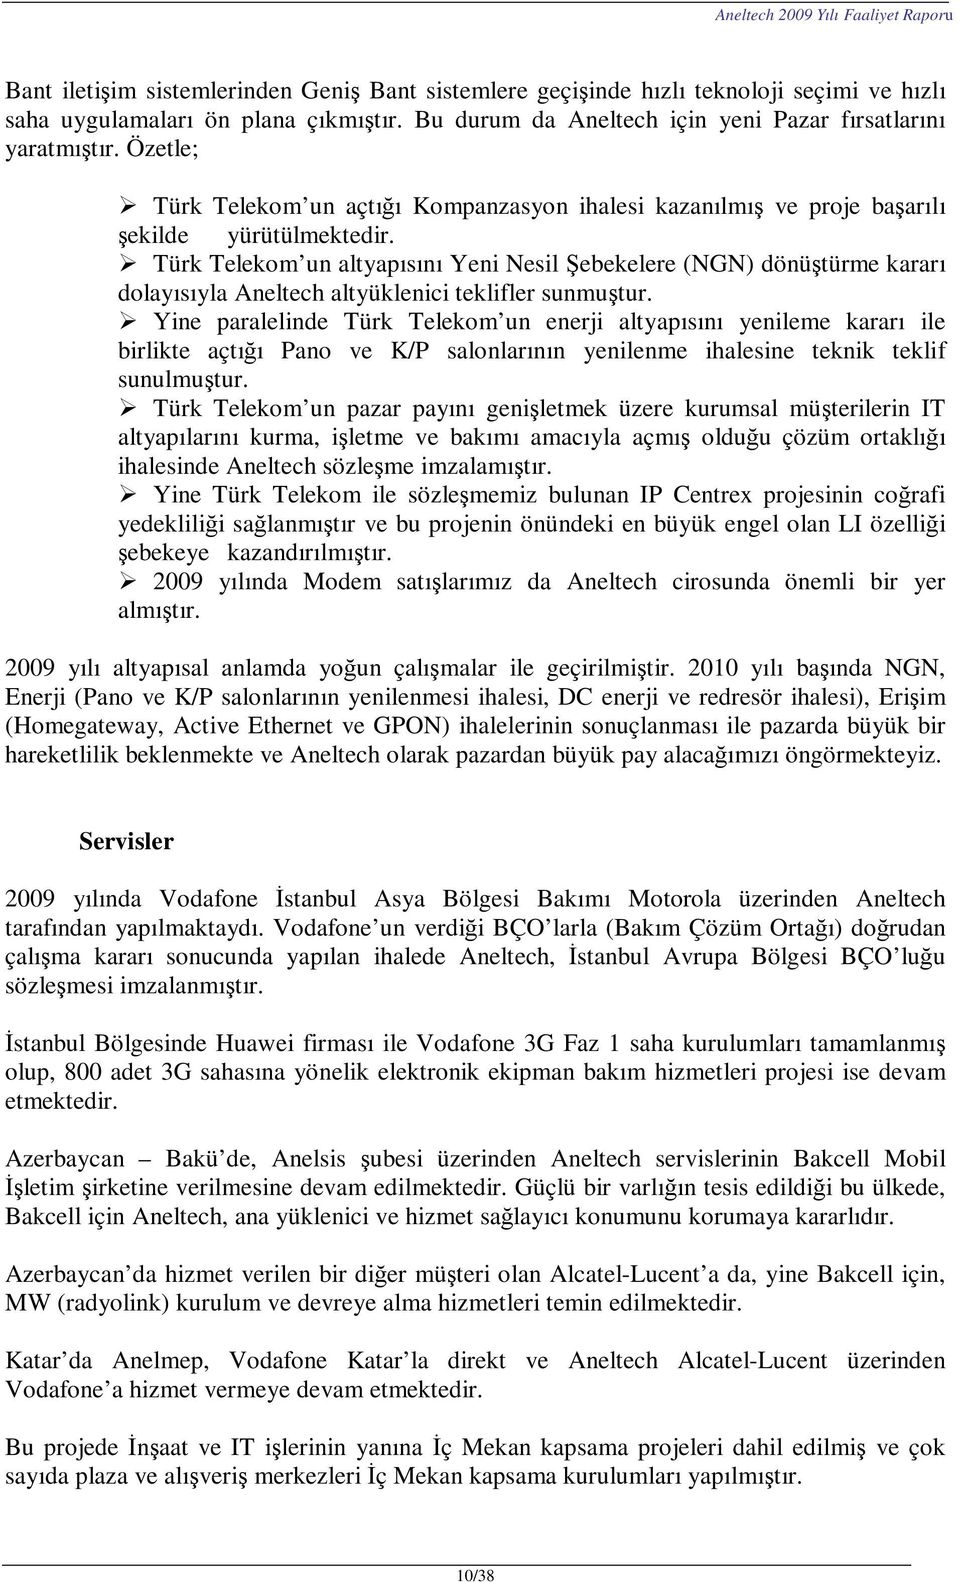 Türk Telekom un altyapısını Yeni Nesil Şebekelere (NGN) dönüştürme kararı dolayısıyla Aneltech altyüklenici teklifler sunmuştur.